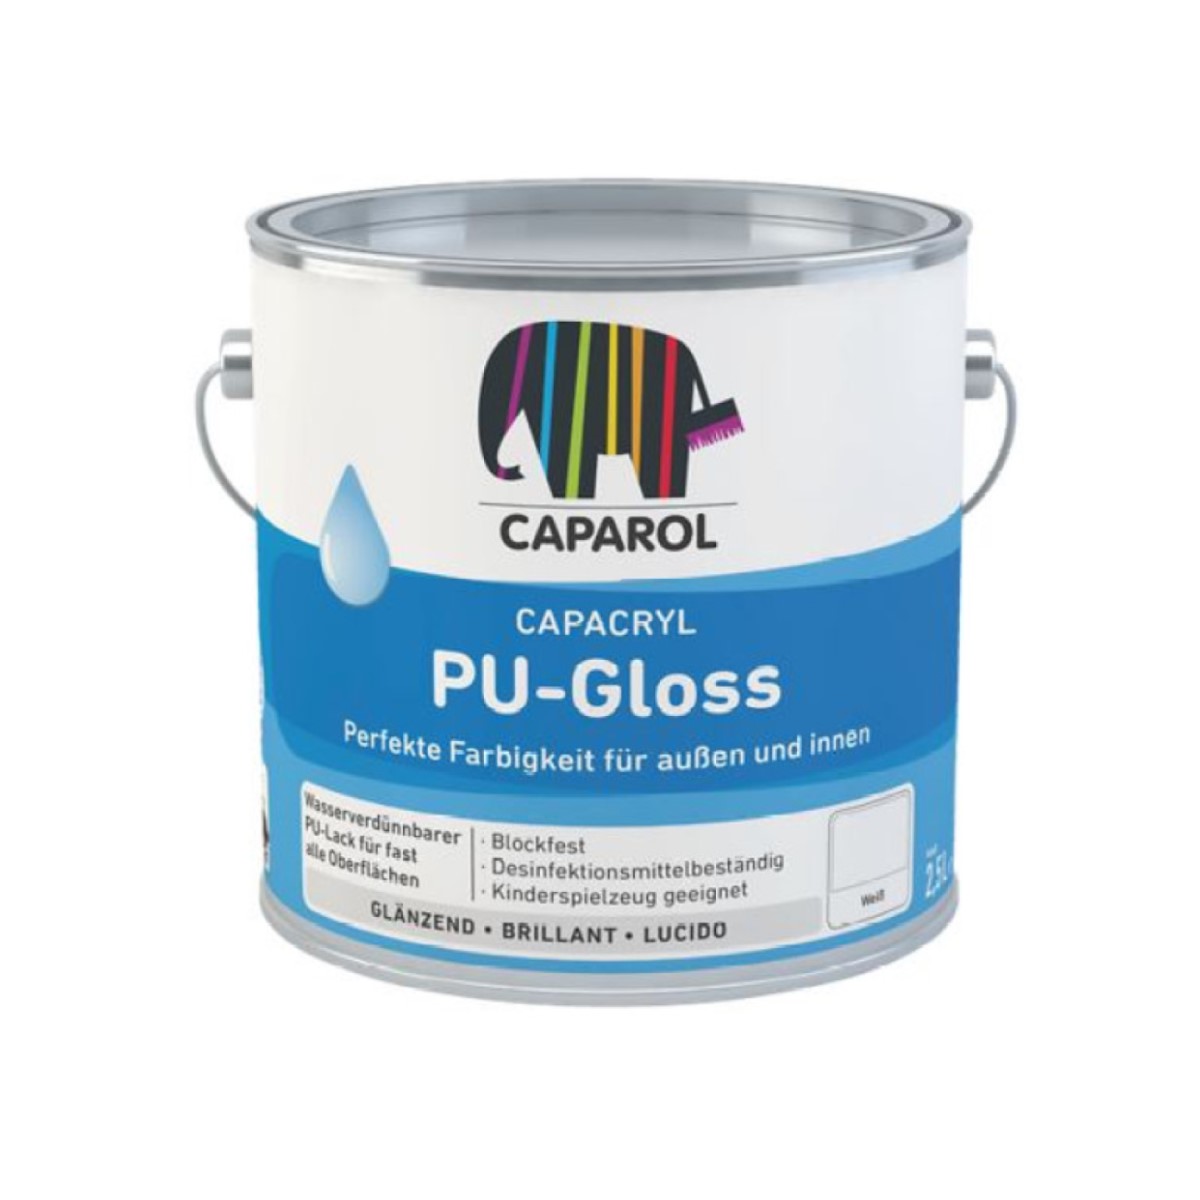 Caparol Capacryl PU-Gloss Augstvērtīga poliuretāna-akrila krāsa furnitūrai, spīdīga